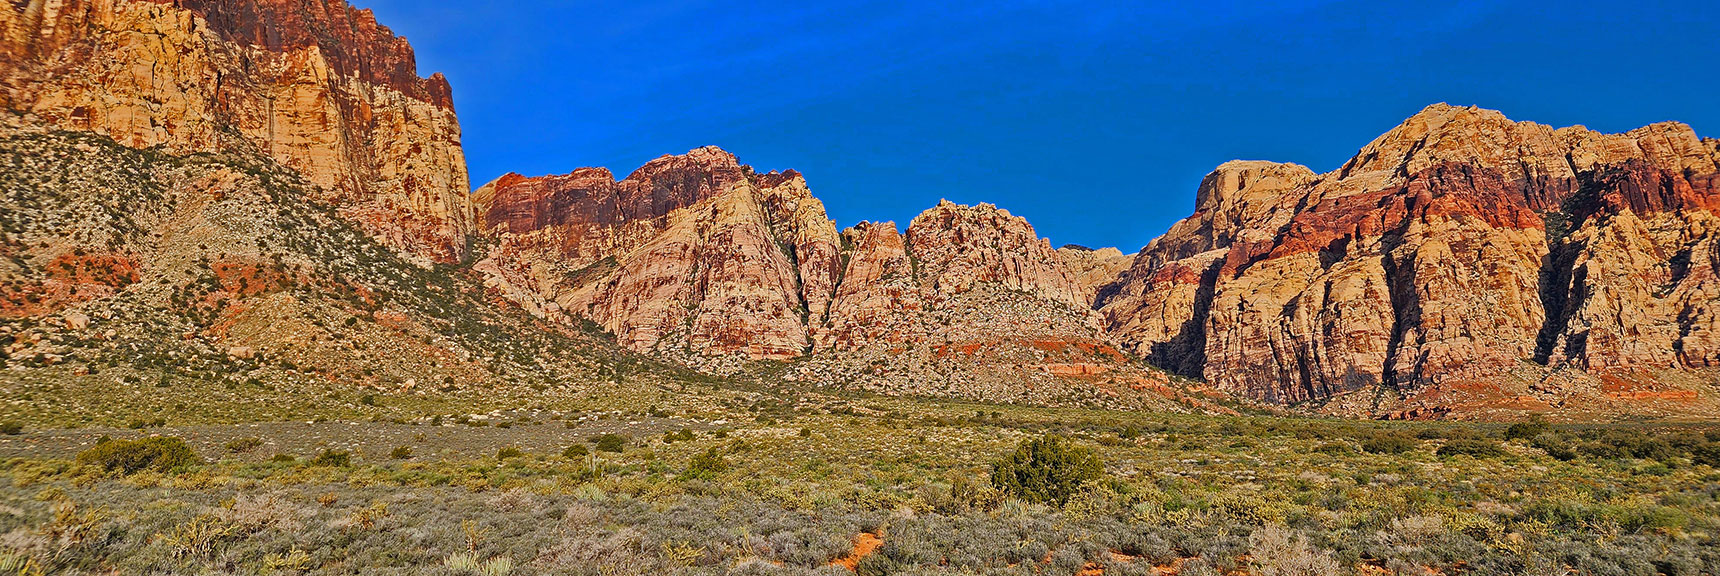 Juniper Peak (left) from Arnight Trail | Arnight Trail | Red Rock Canyon, Nevada | David Smith | LasVegasAreaTrails.com